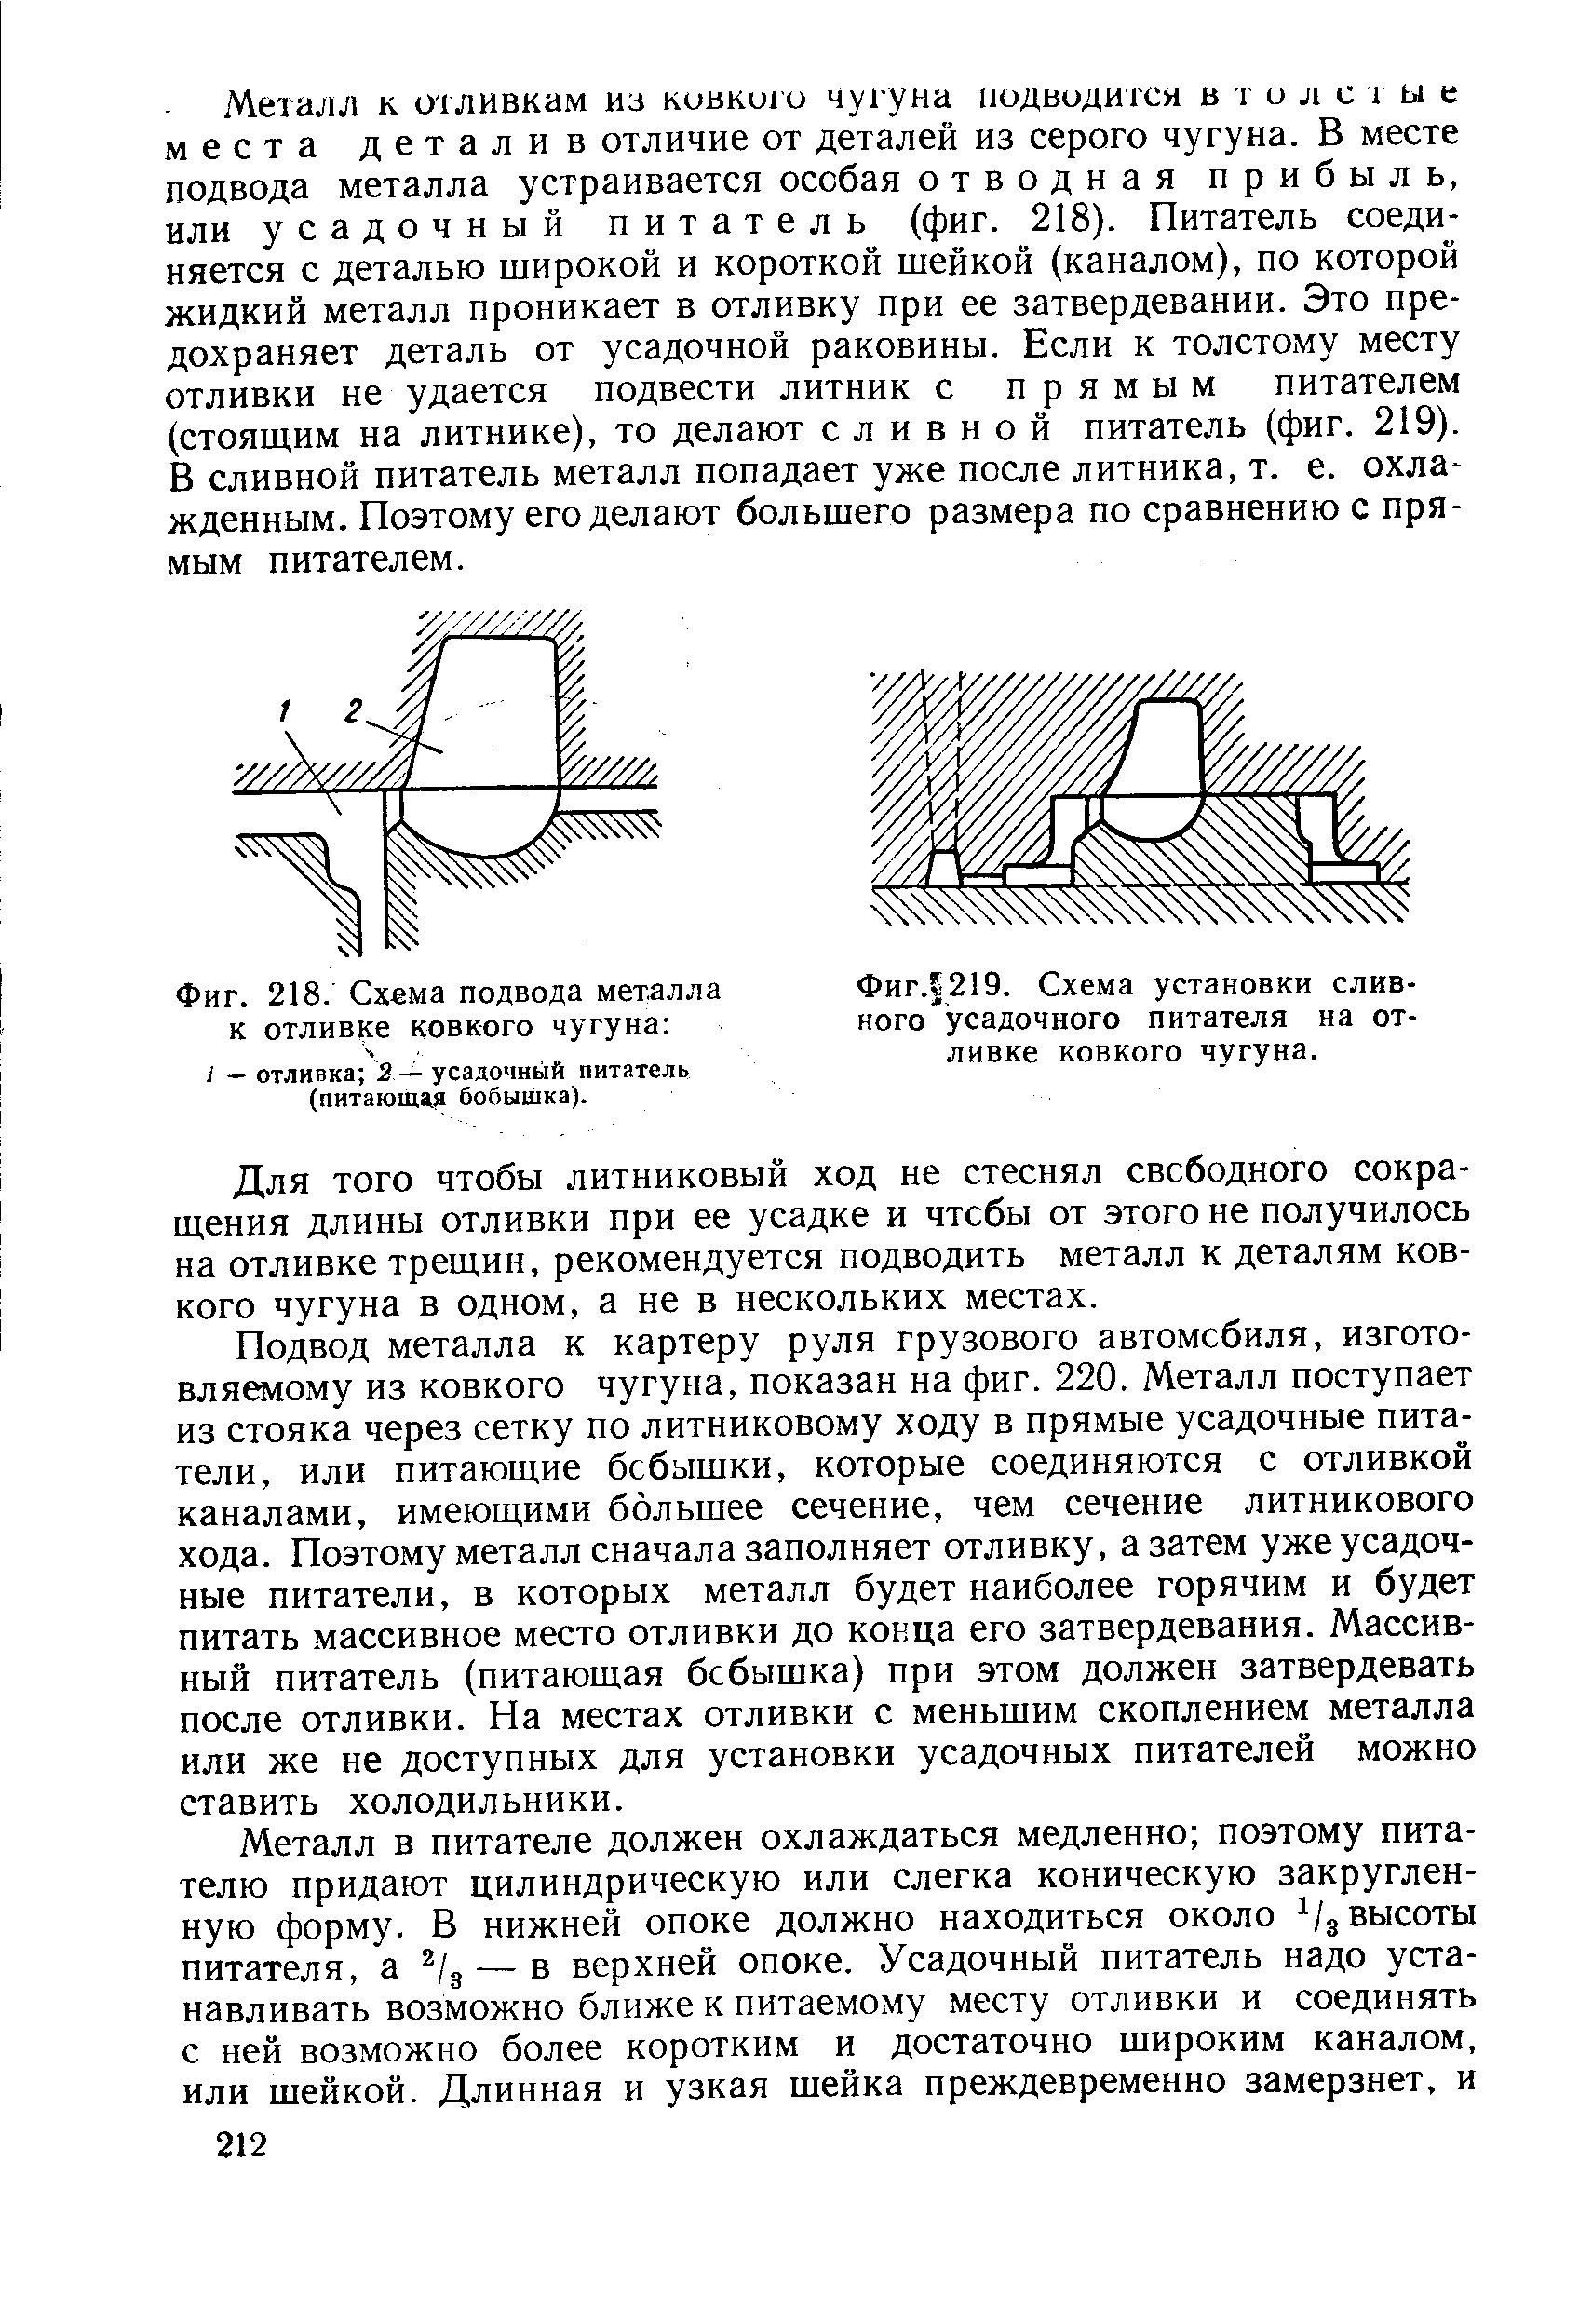 Фиг. 219. Схема установки сливного усадочного питателя на отливке ковкого чугуна.
